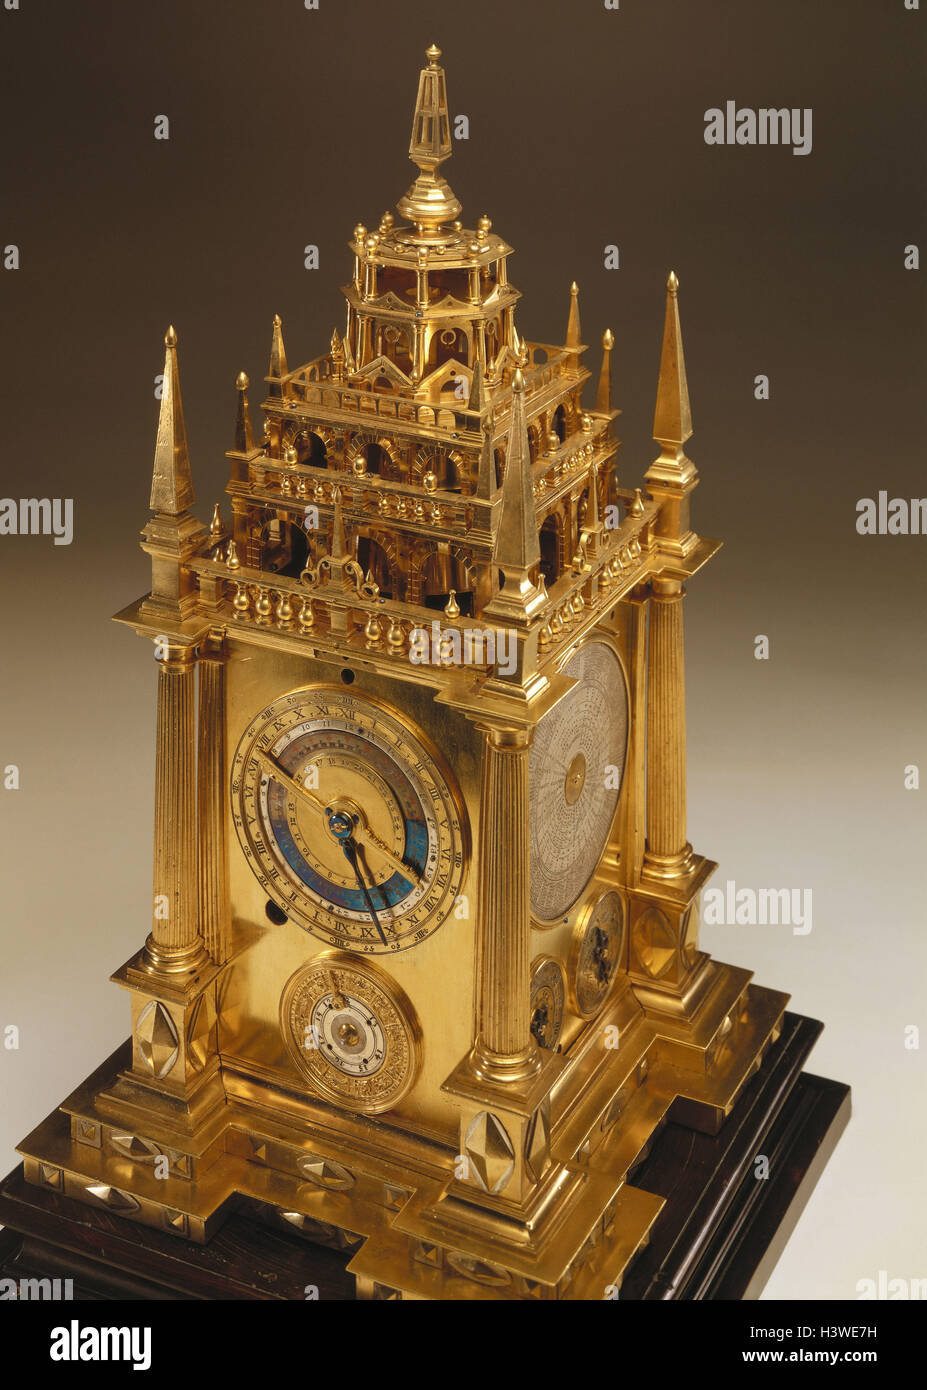 Antik, Tischuhr, Augsburg, über 1600 Antiquitäten, Produktfotografie, Uhr,  Uhren,, Kalenderuhr, Kalender, Uhr, jährliche, jährliche Uhr, Tischuhr,  gold Stockfotografie - Alamy